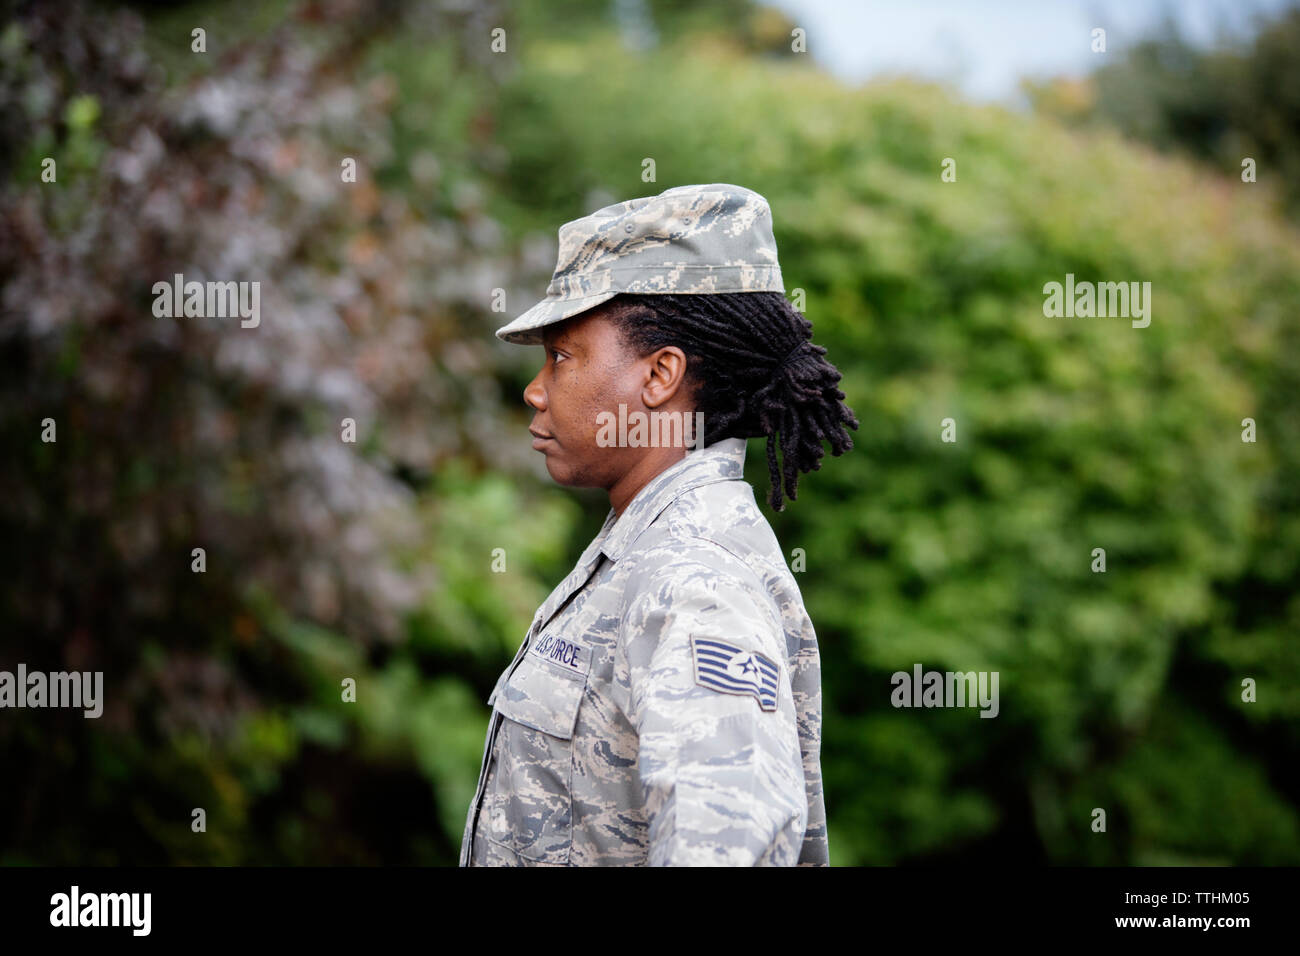 Vue de profil de femme soldat debout contre des arbres Banque D'Images